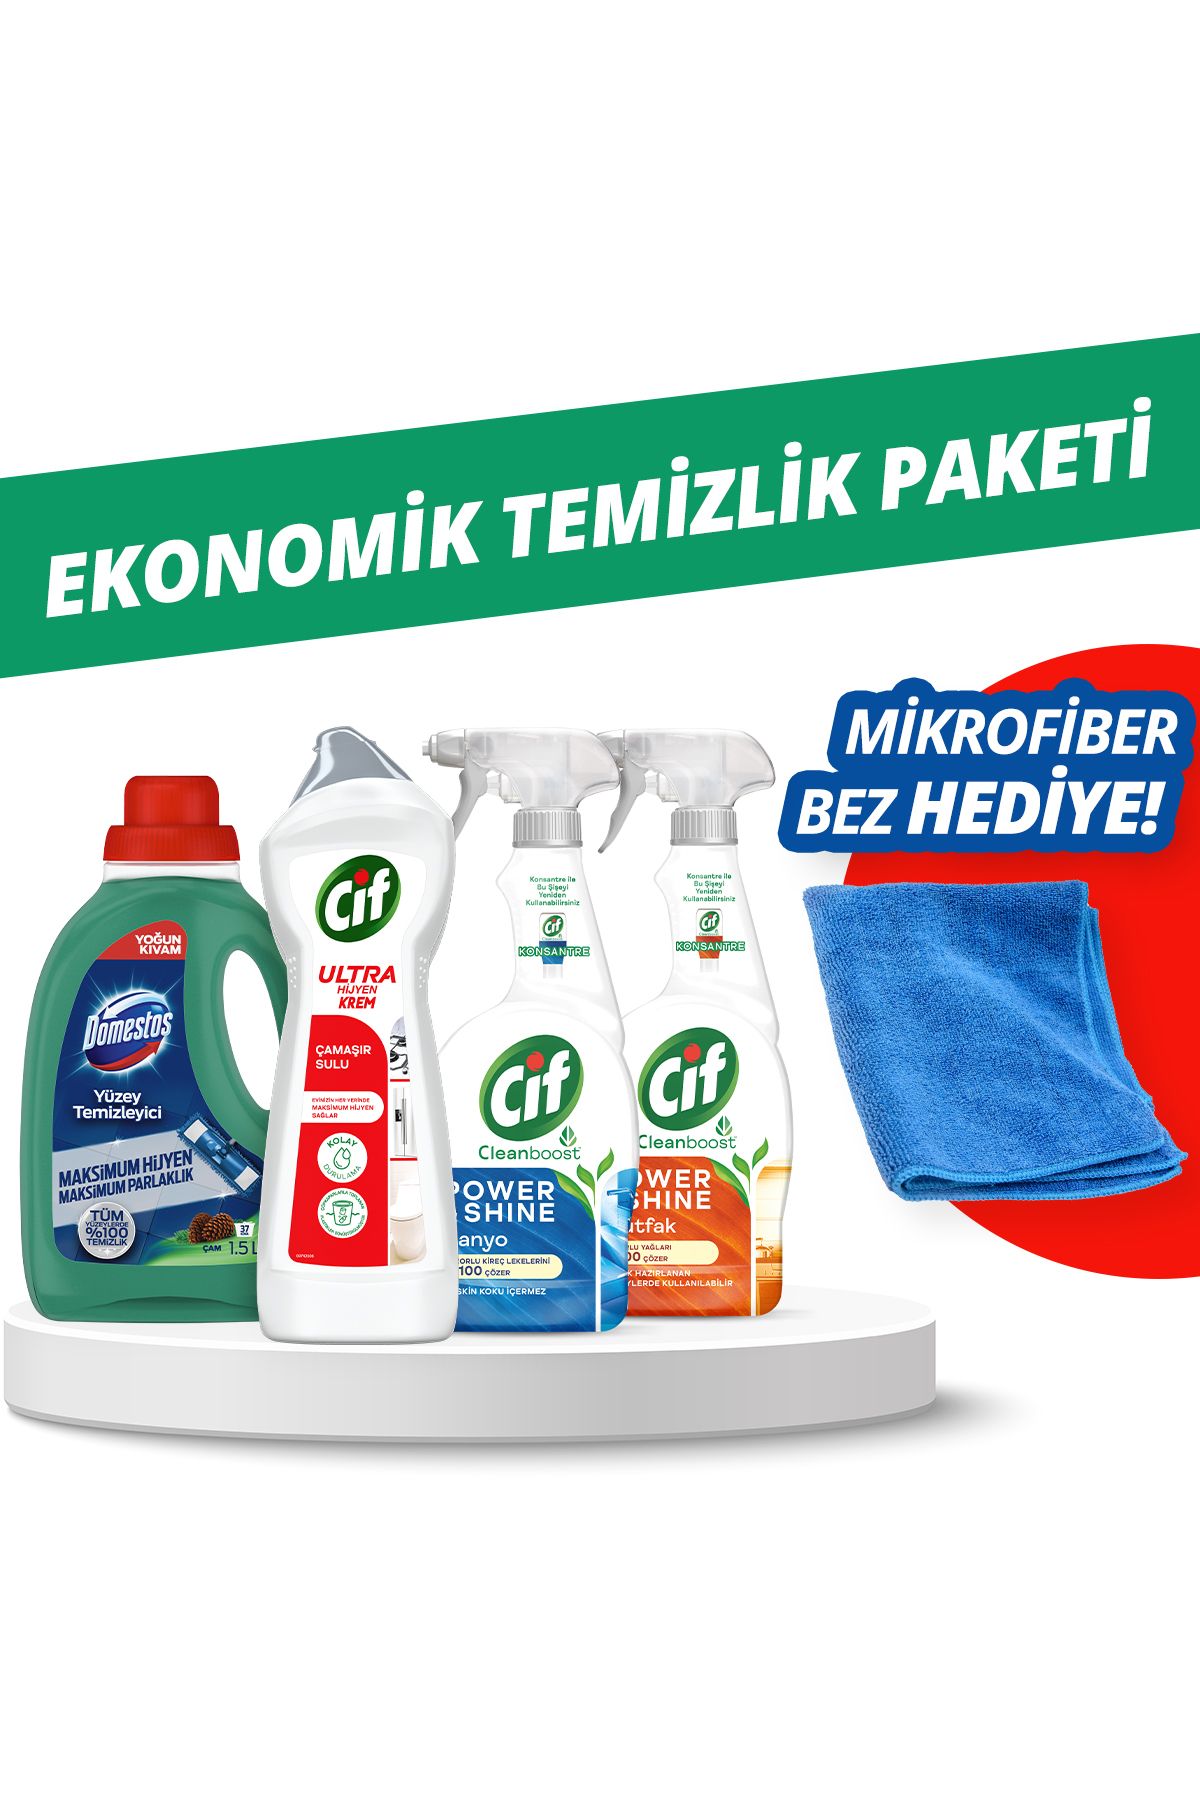 Domestos Unilever Ekonomik Temizlik Paketi Mikrofiber Bez Hediye